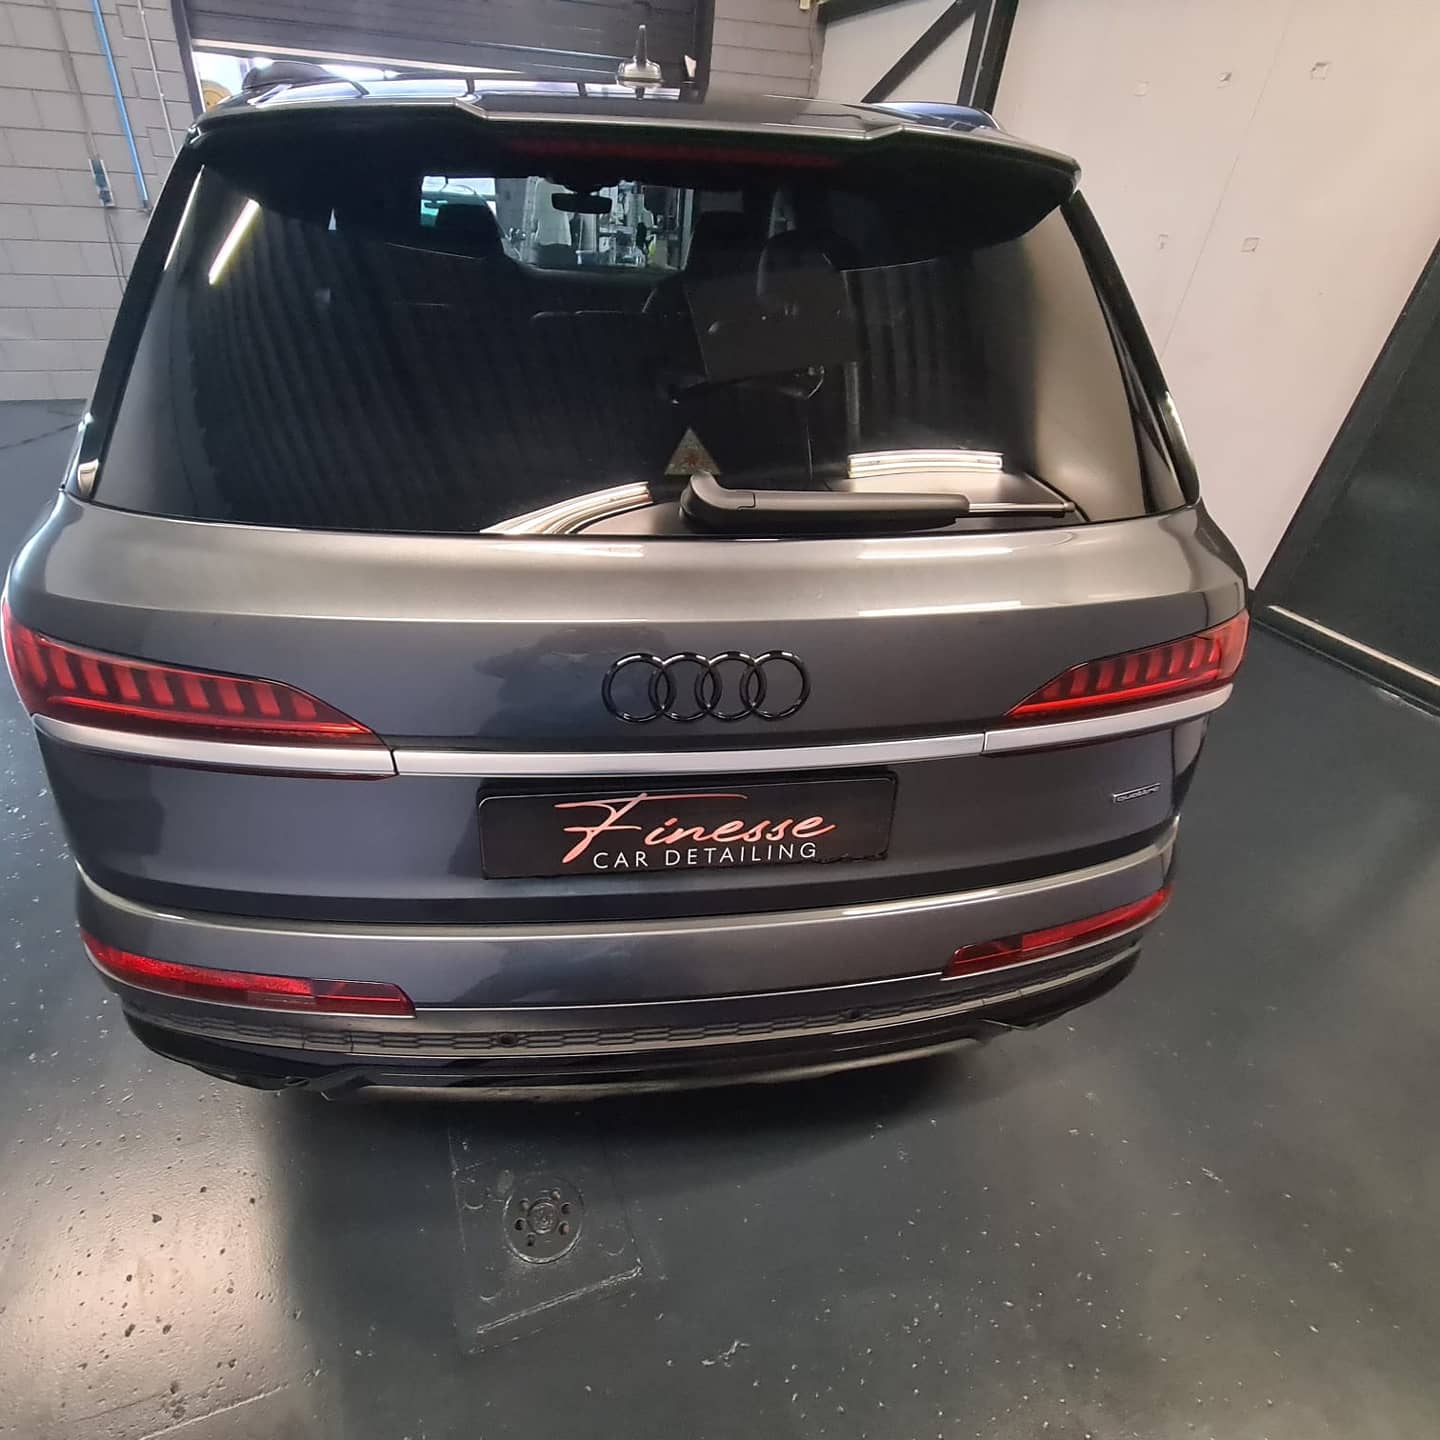 Geblindeerde ruiten op Audi